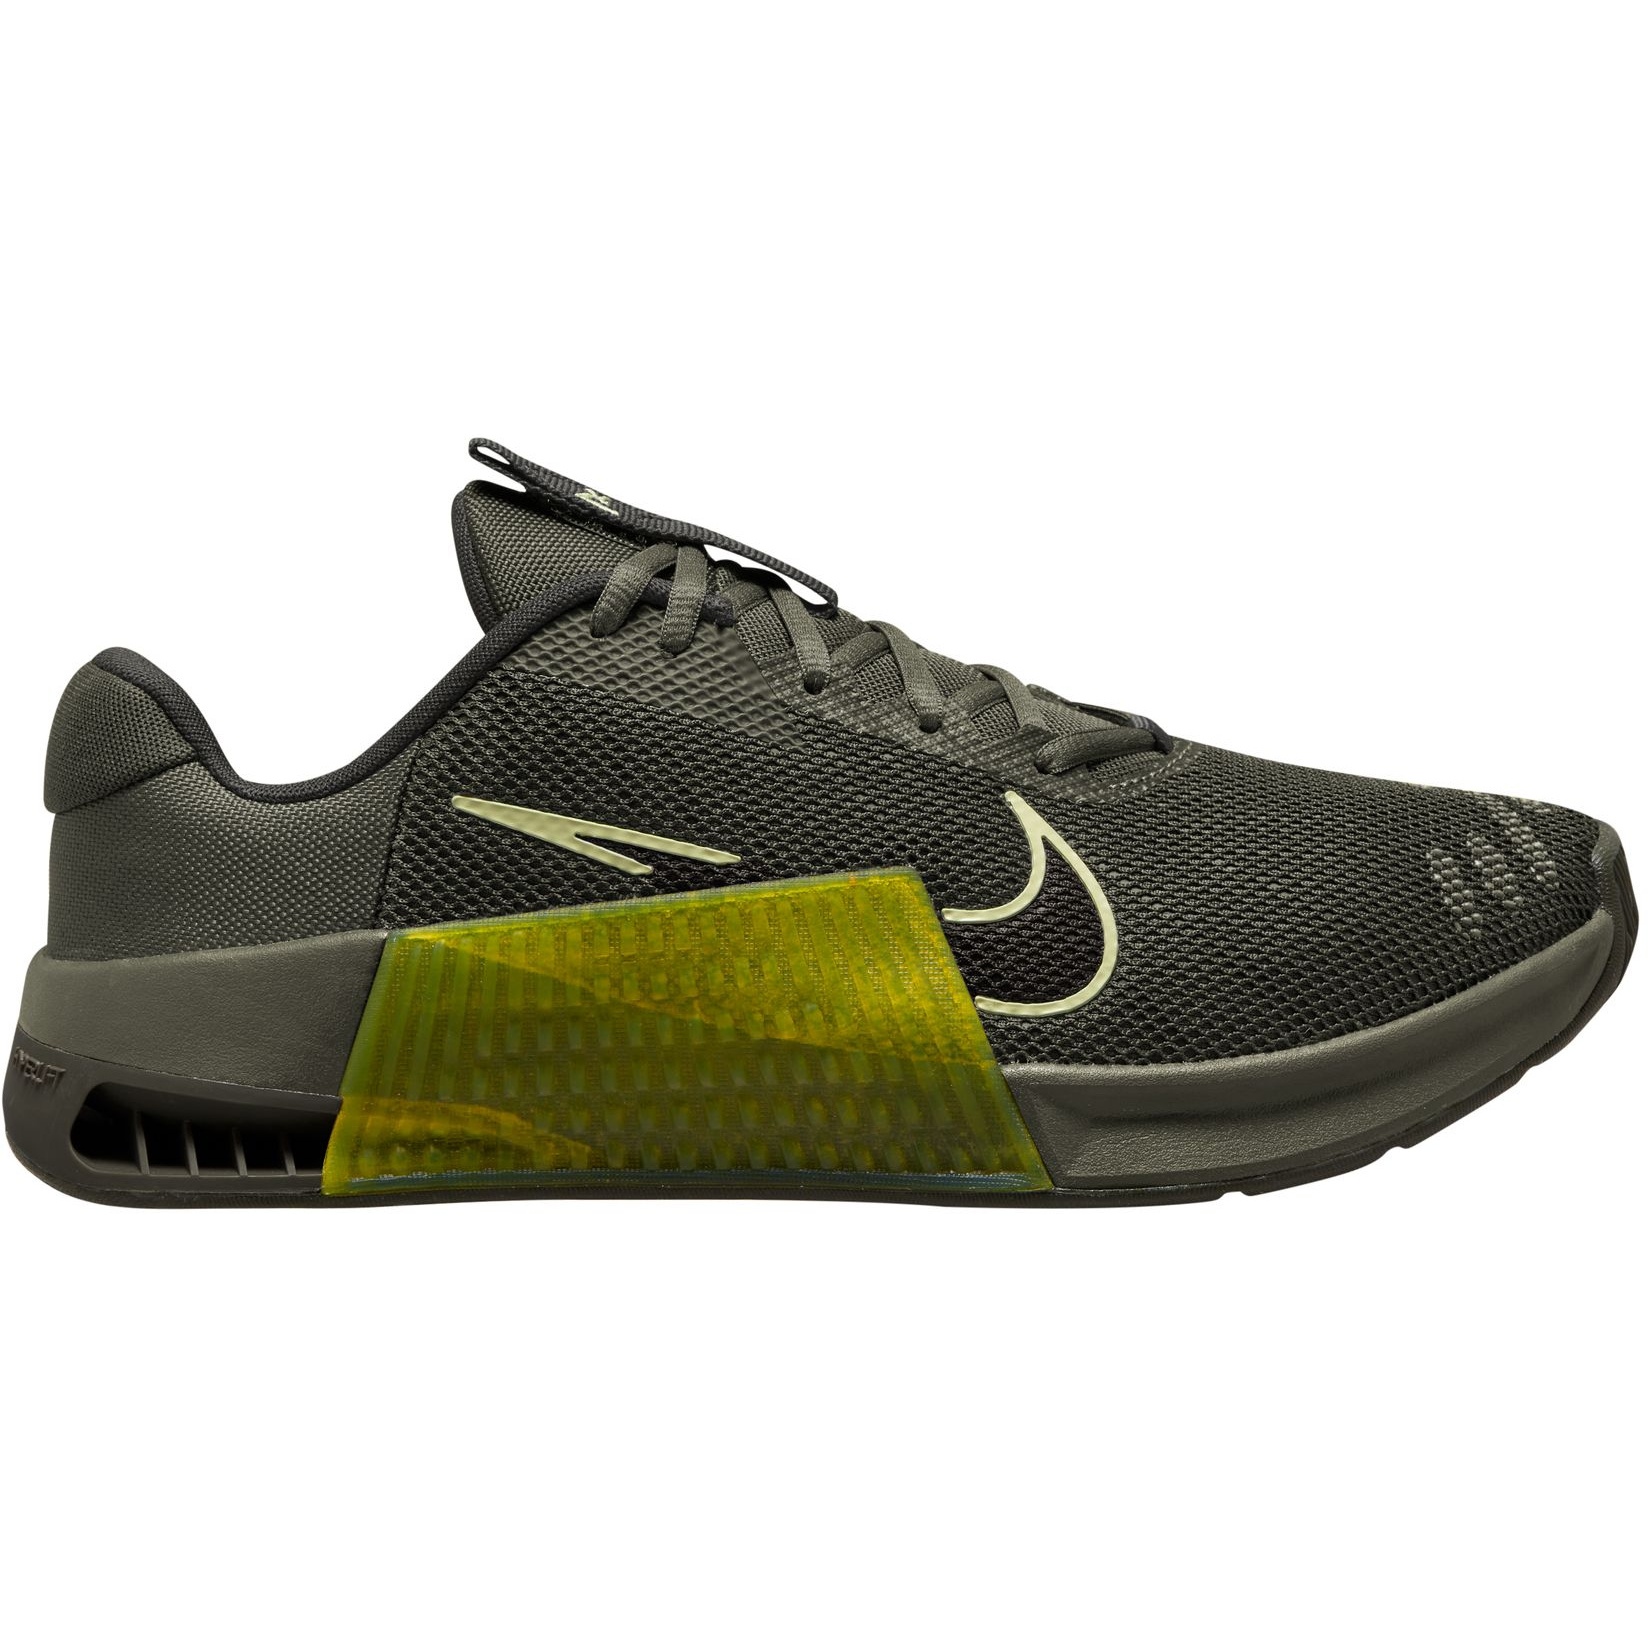 Produktbild von Nike Metcon 9 Trainingsschuhe Herren - olive/sequoia-high voltage DZ2617-300